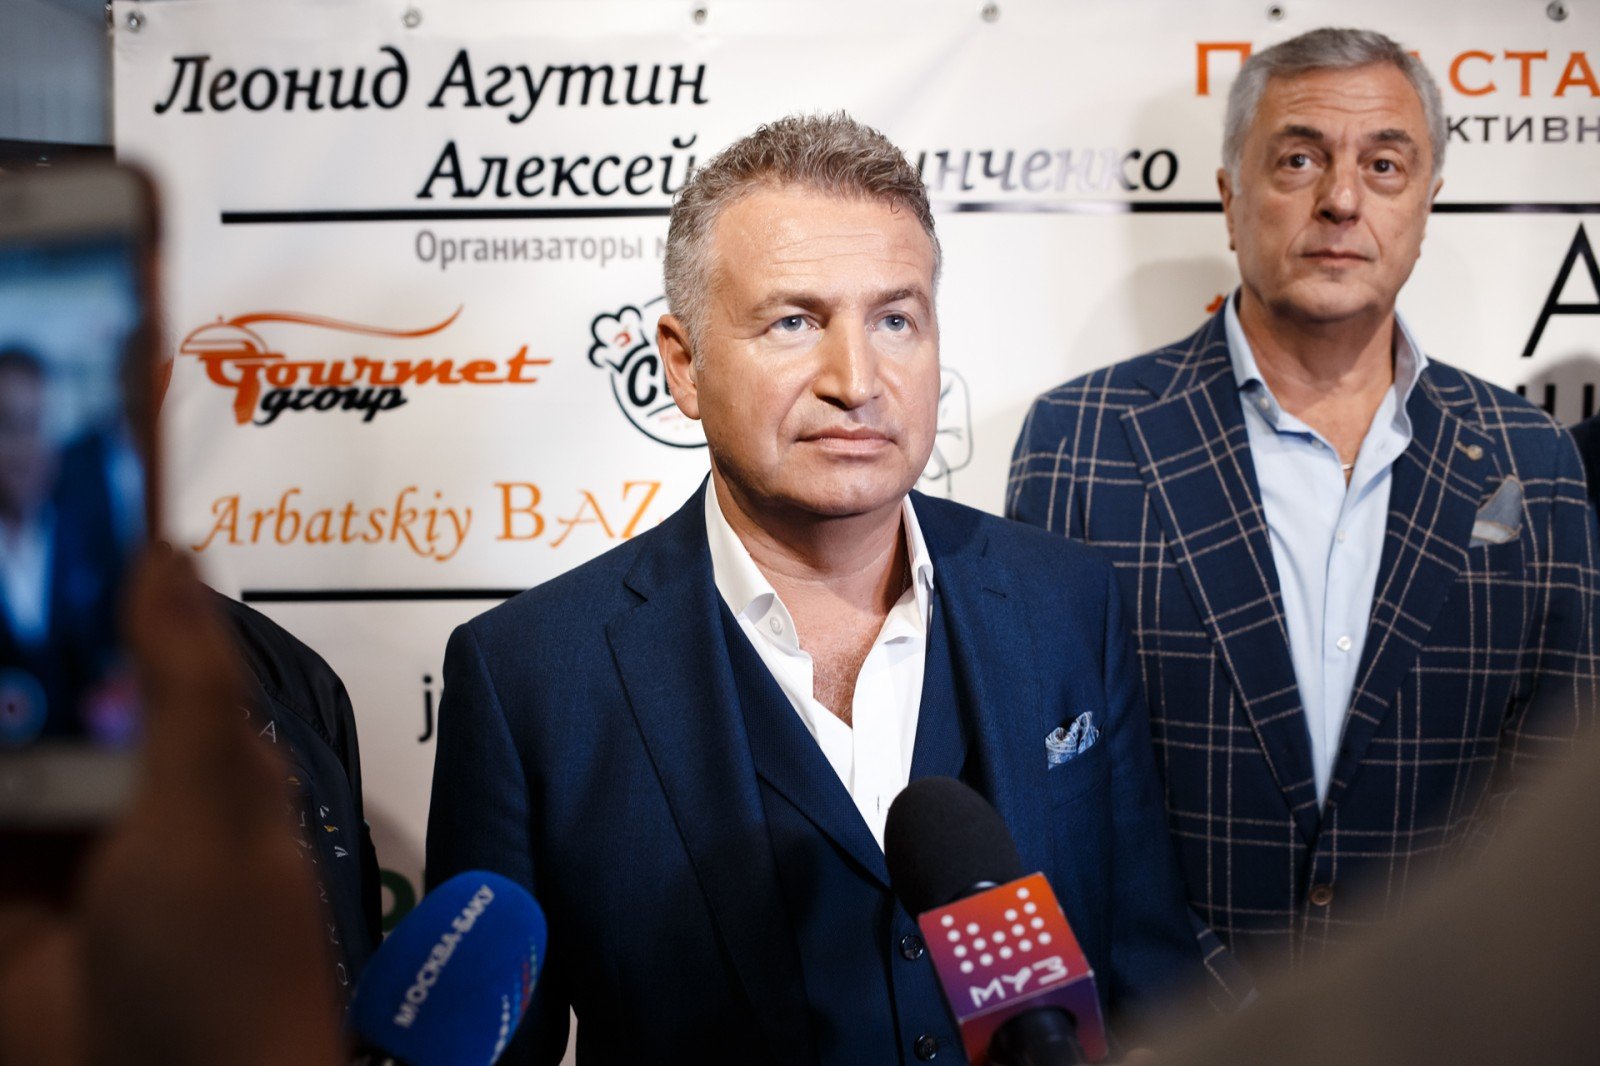 Отар Кушанашвили и Николай Фоменко поздравили Леонида Агутина с презентацией новой книги